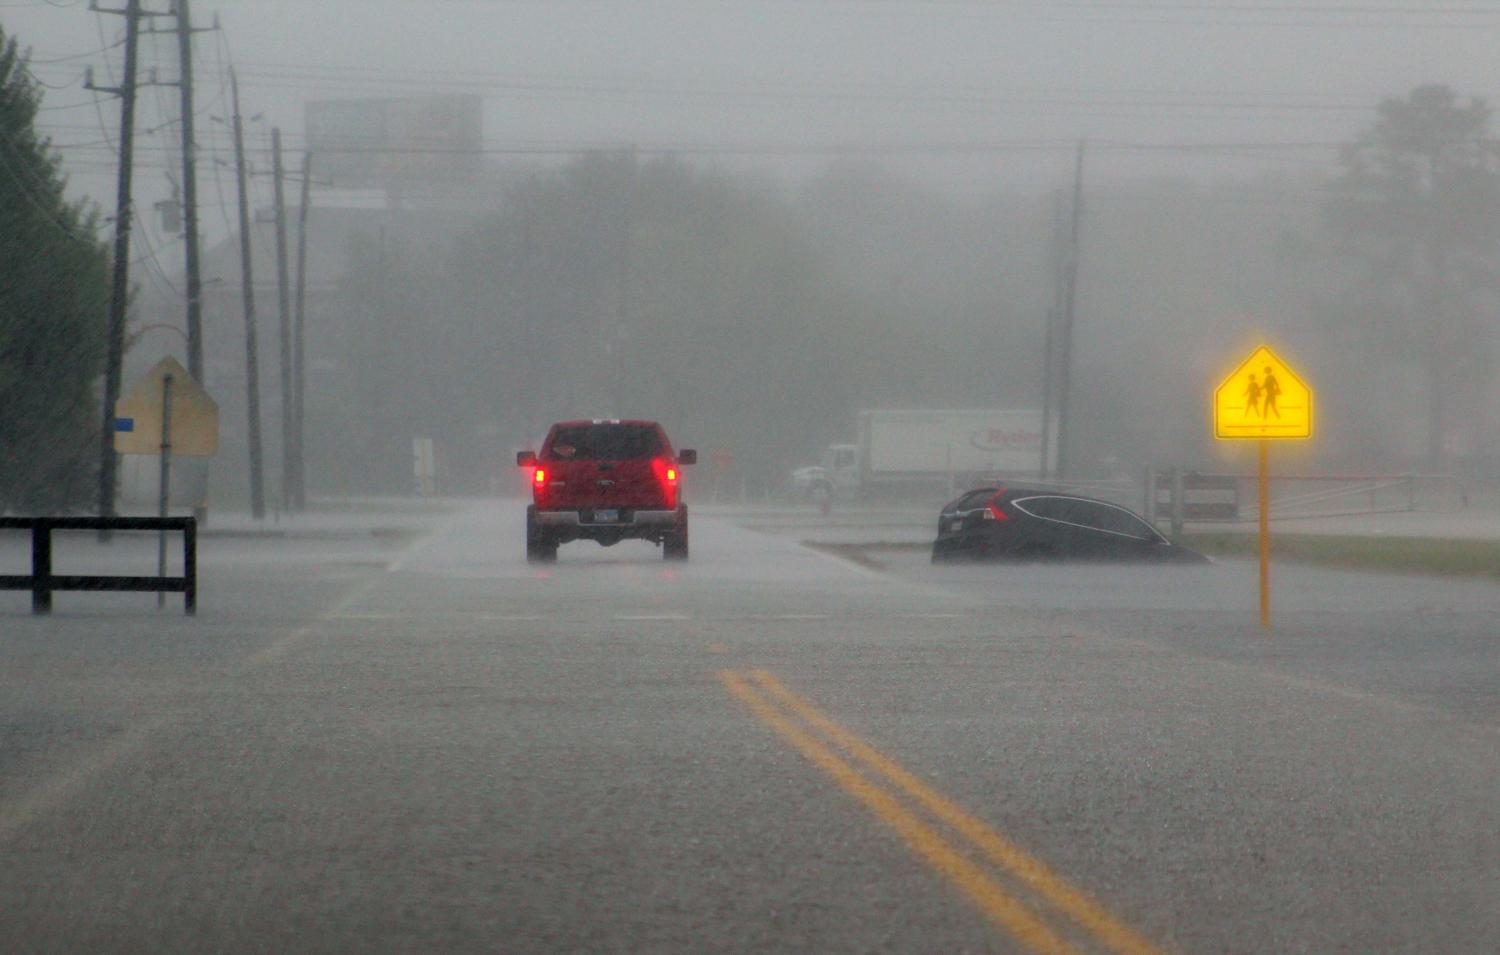 A car drives through the rain while the street floods.

